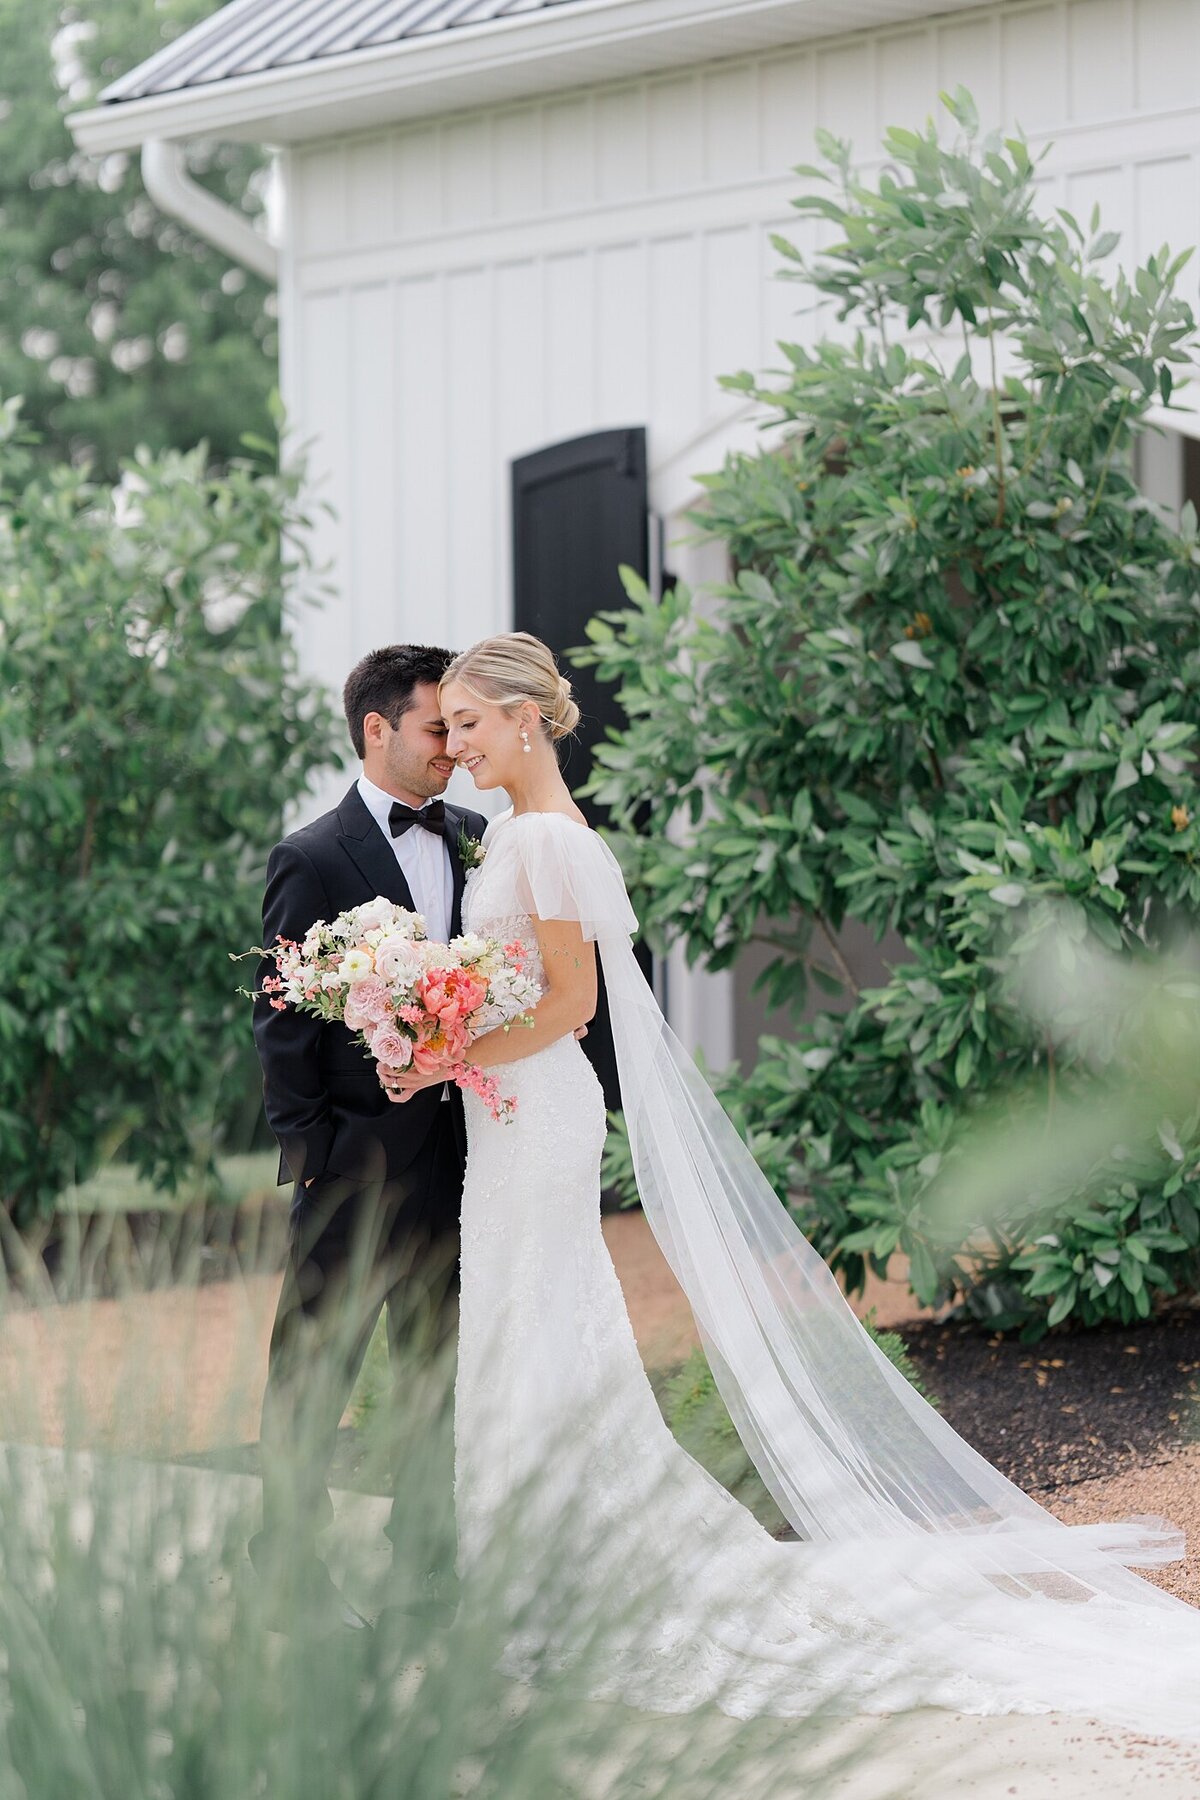 Magnolia-Hill-Farm-Wedding-Ashleigh-Grzybowski-Photography-36